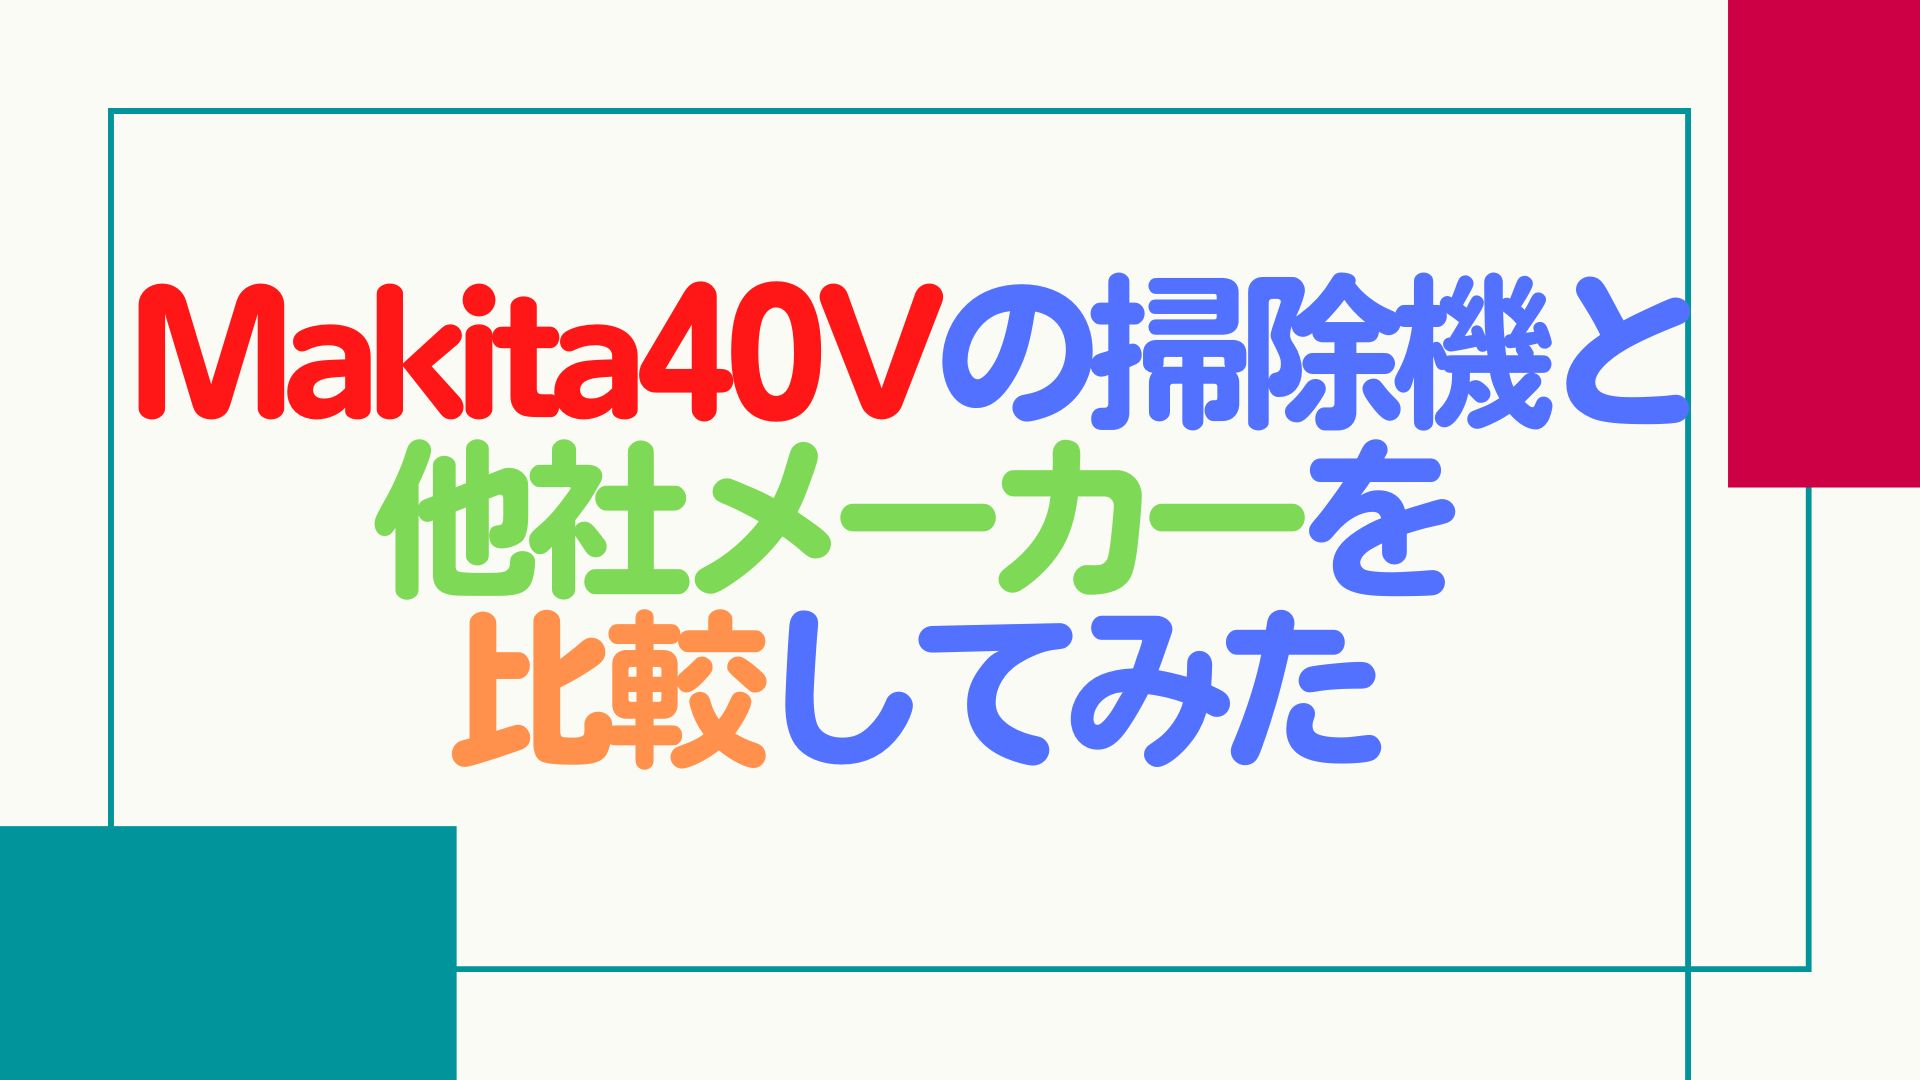 【検証】Makita40Vの掃除機と他社メーカーを比較してみた【オススメ製品も紹介】